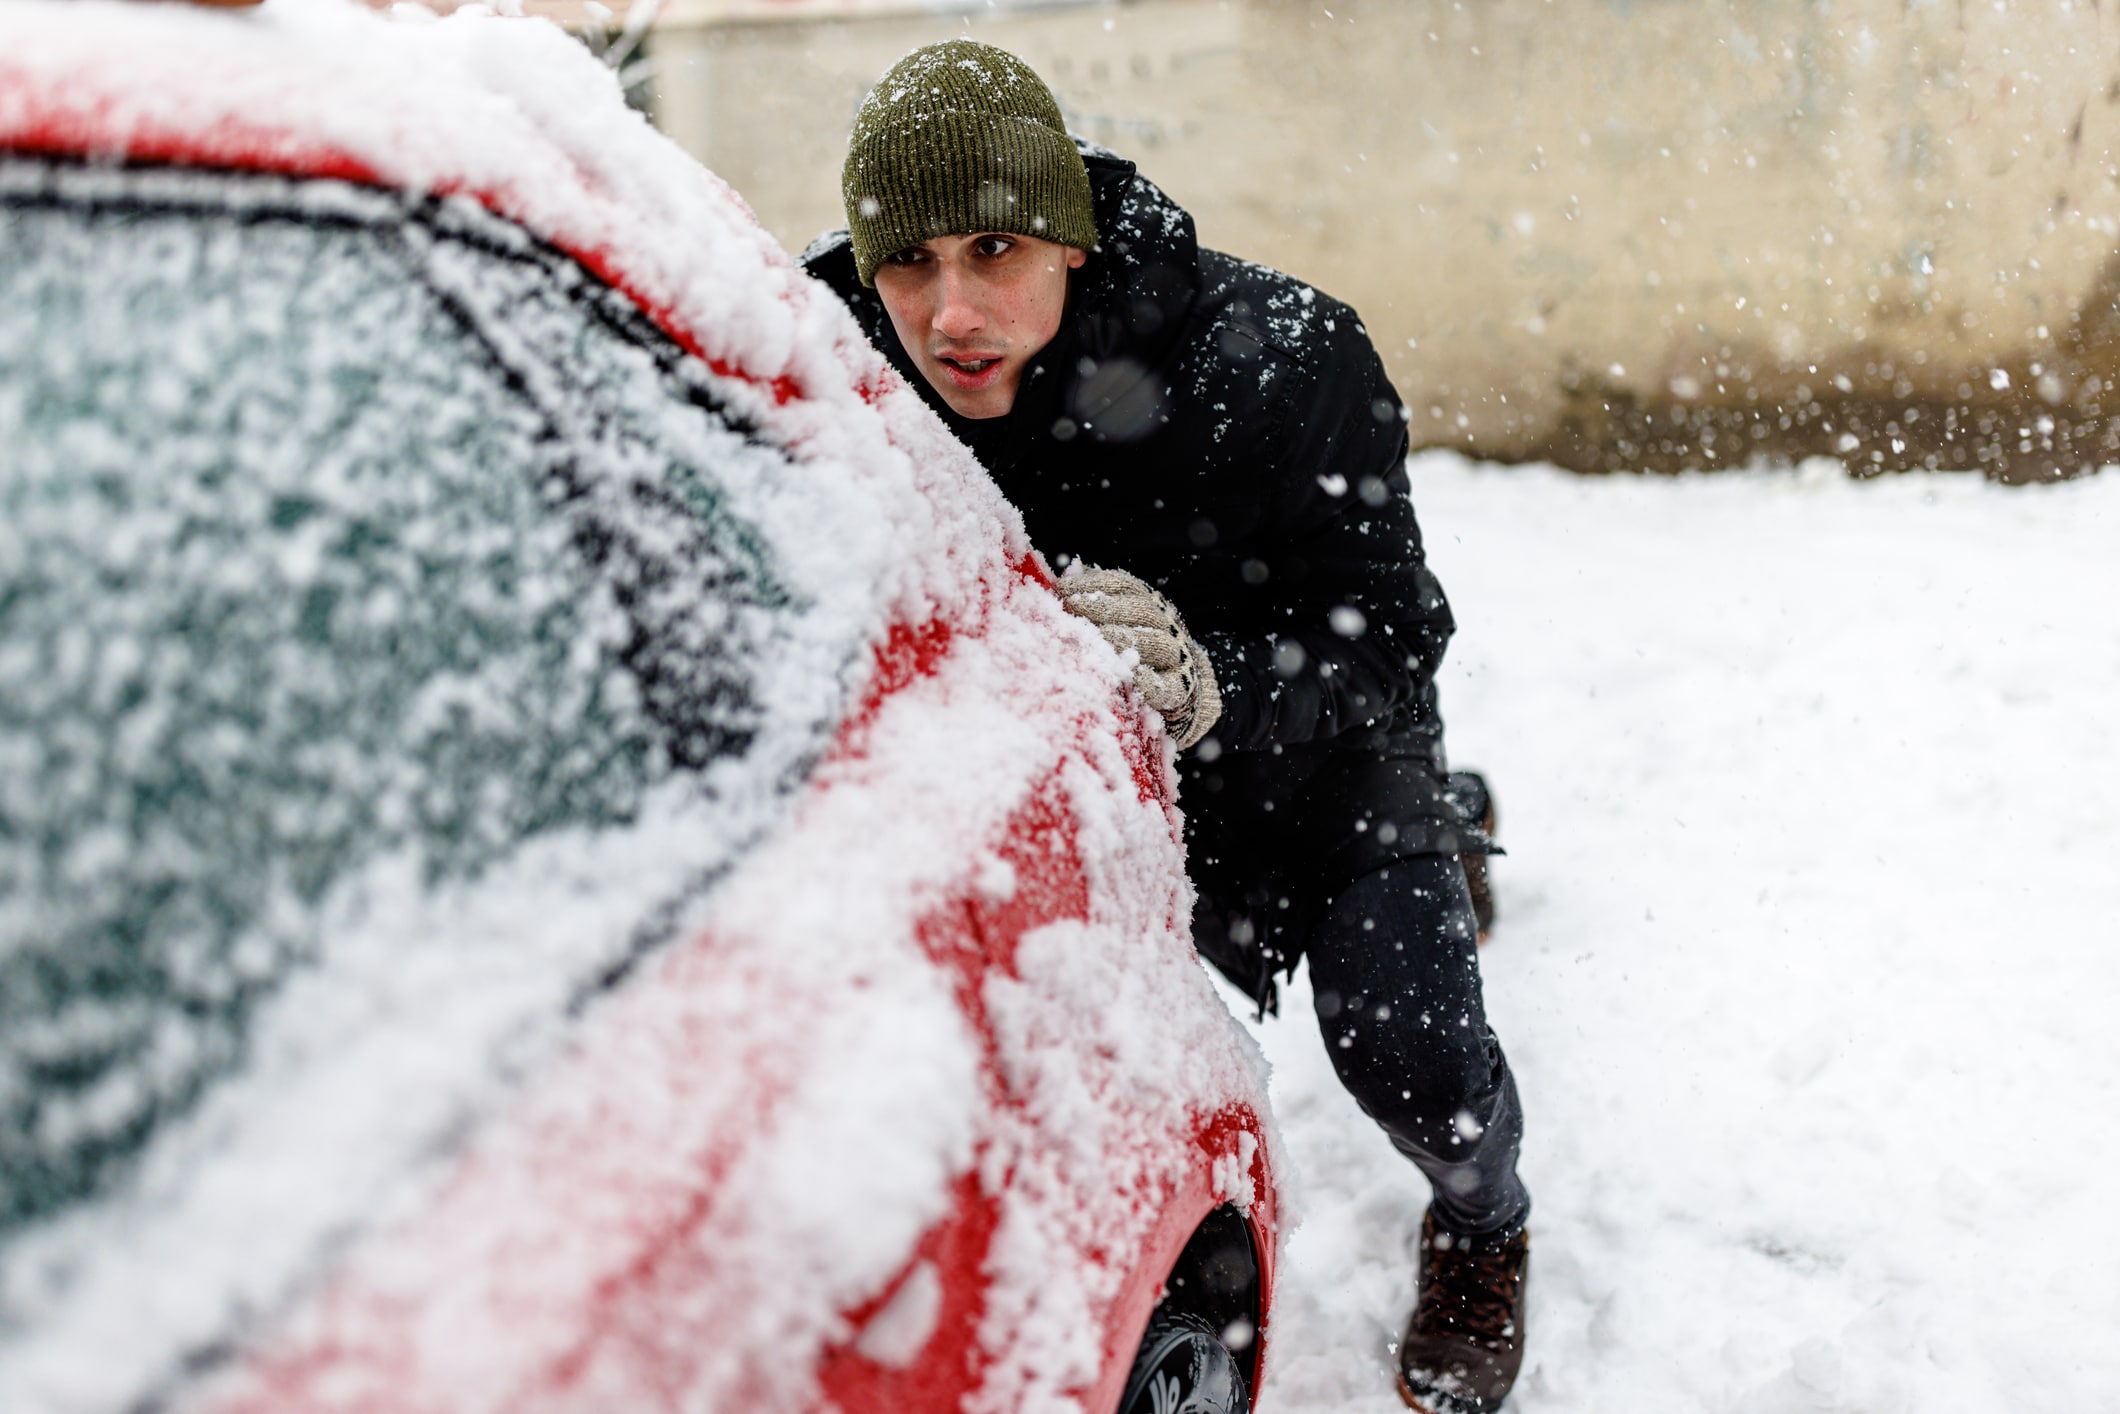 Man preparing car for winter drive